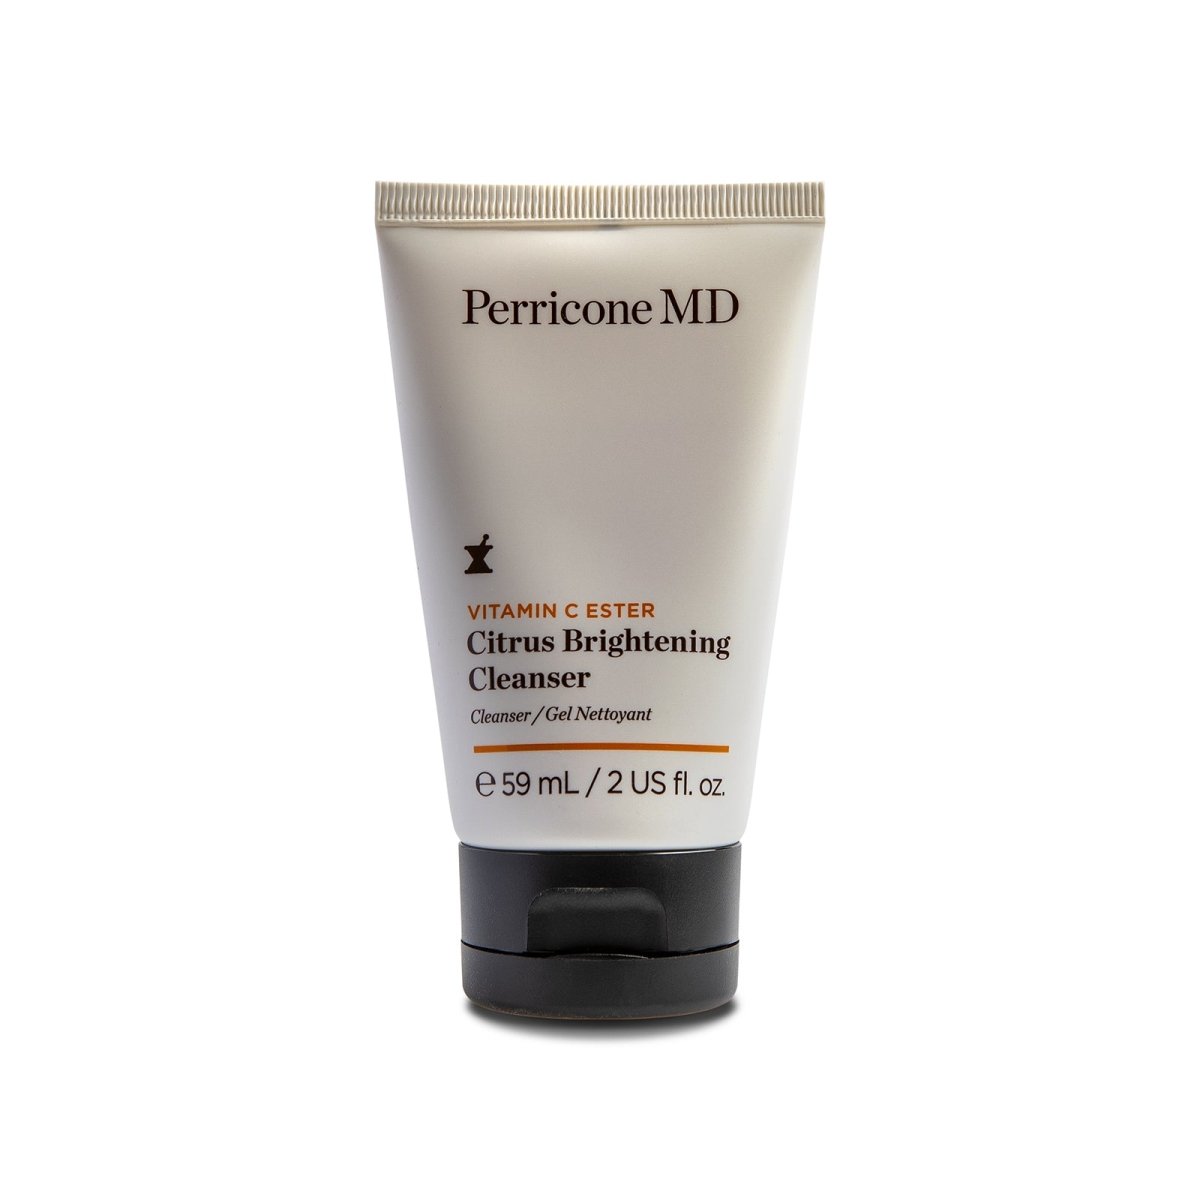 Perricone MD Vitamin C Ester Citrus Brightening Cleanser - SkincareEssentials